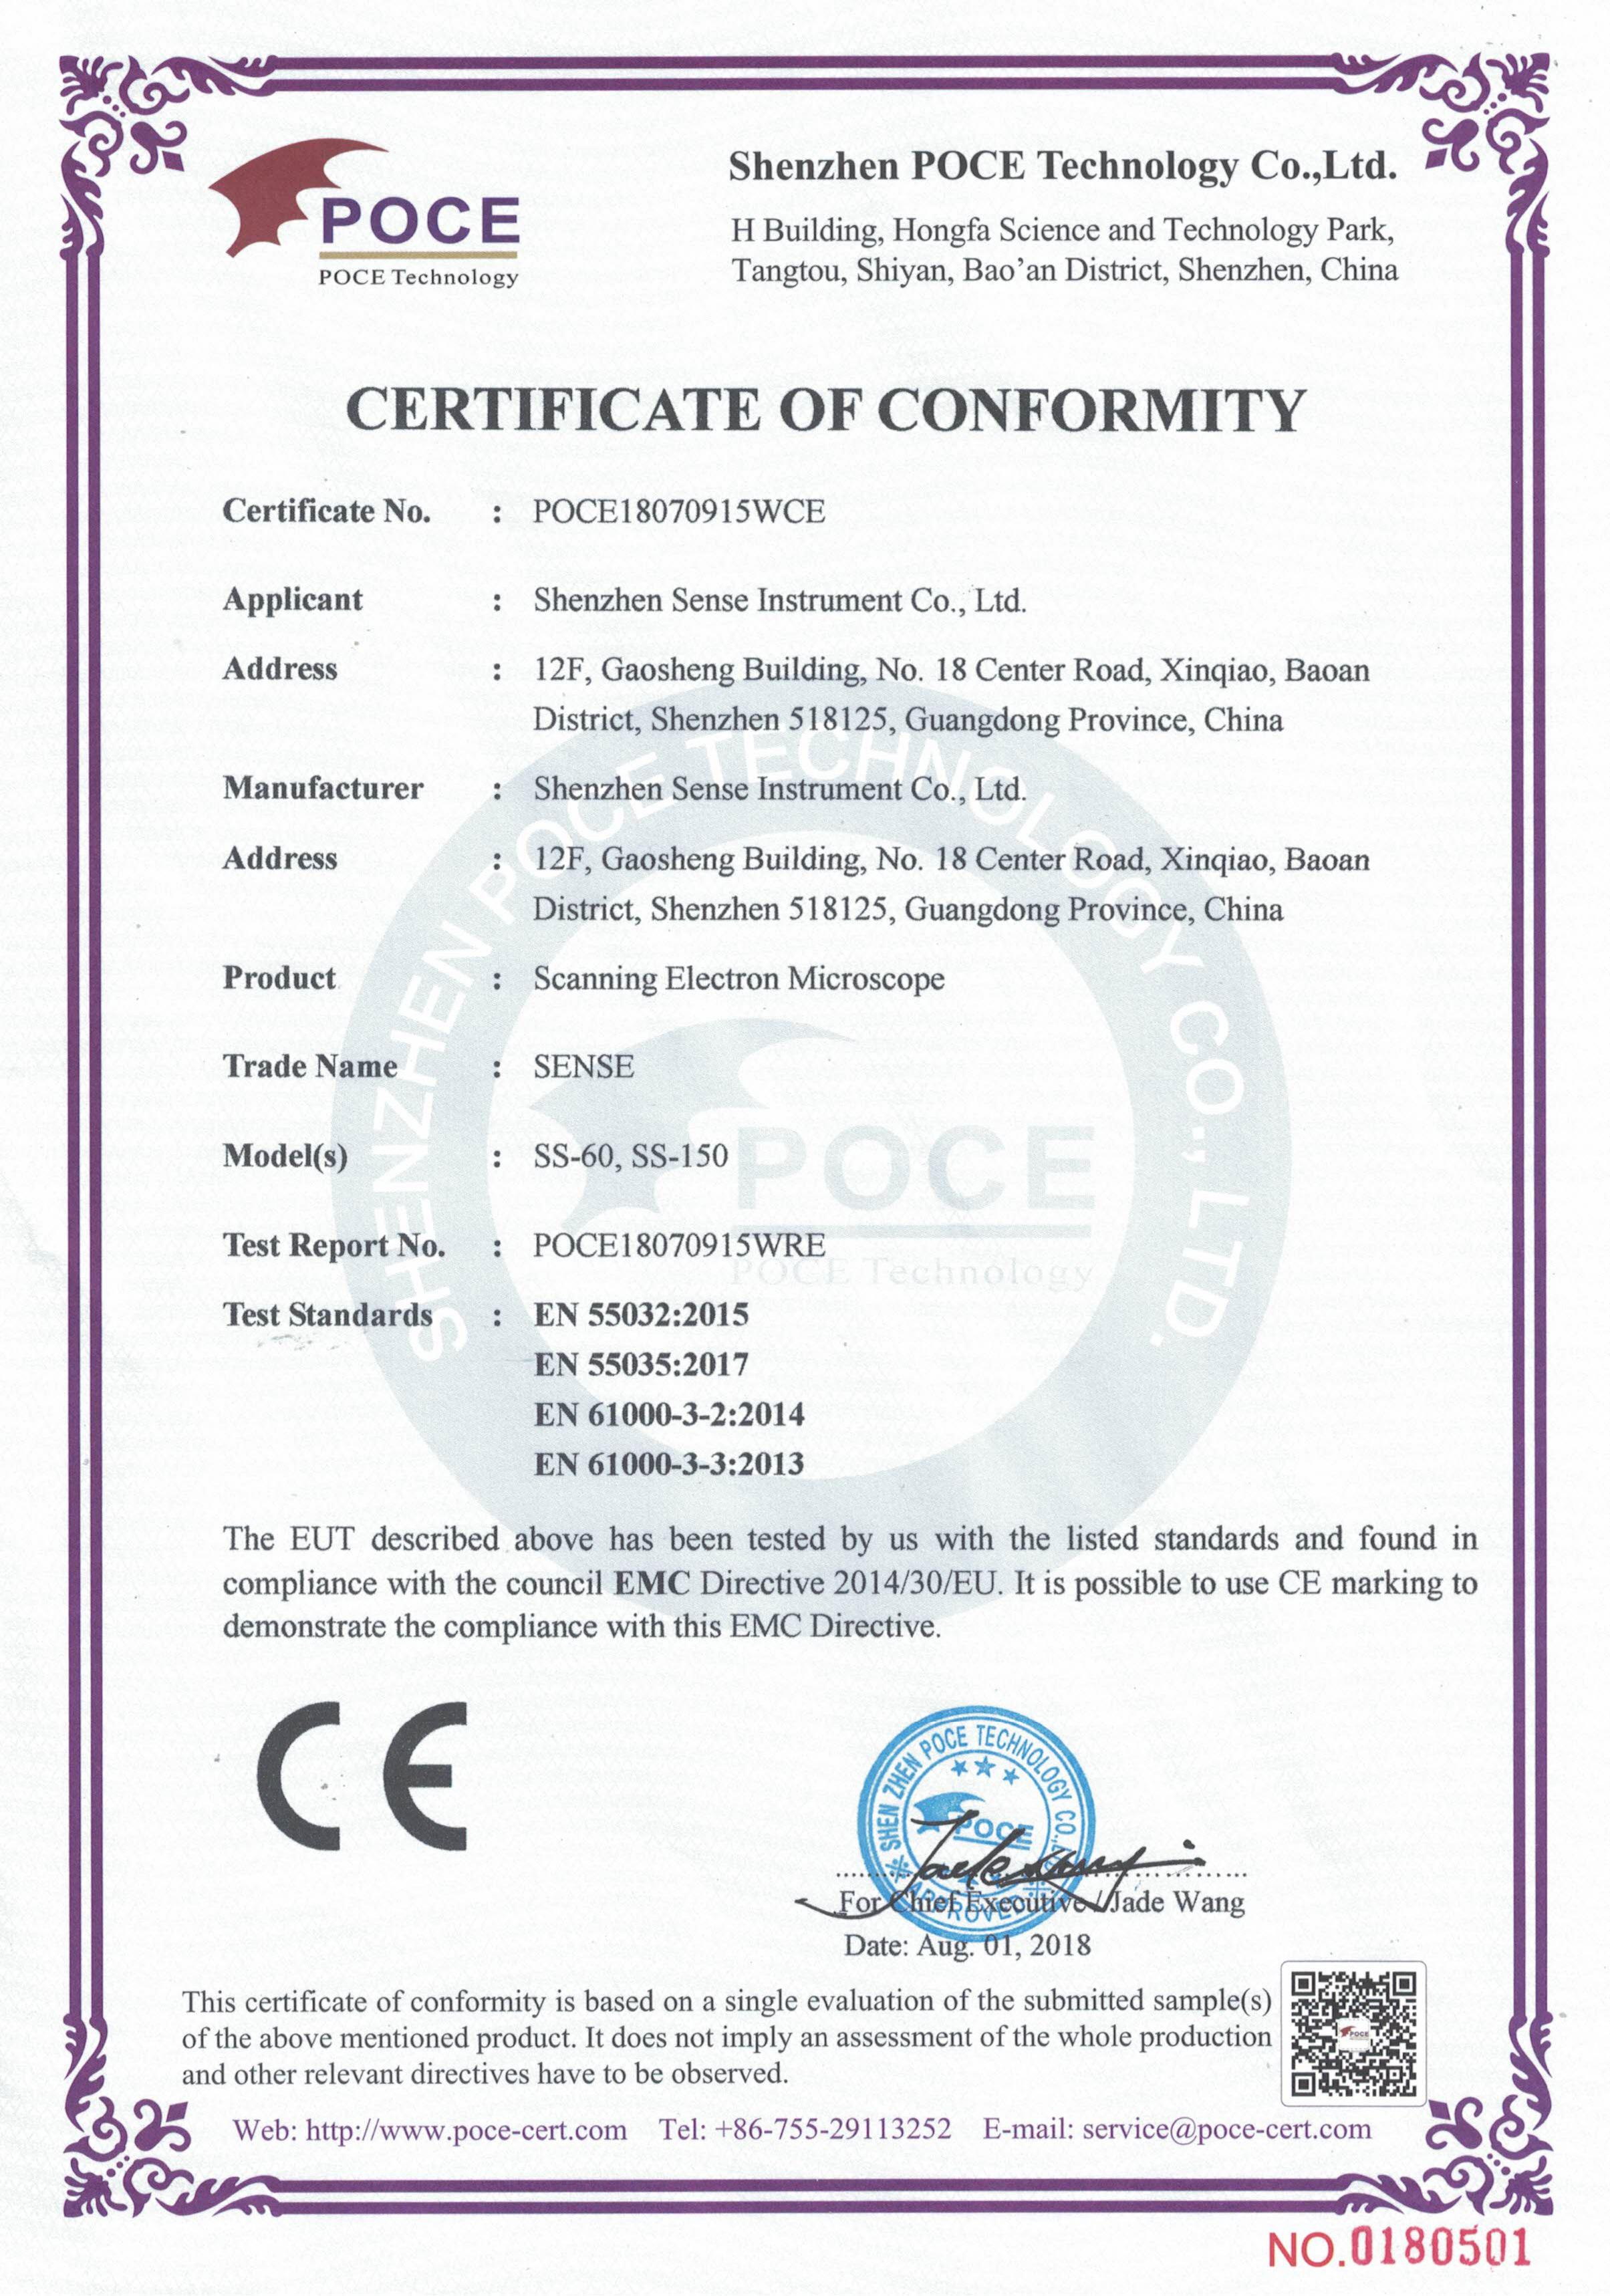 扫描电镜CE证书1